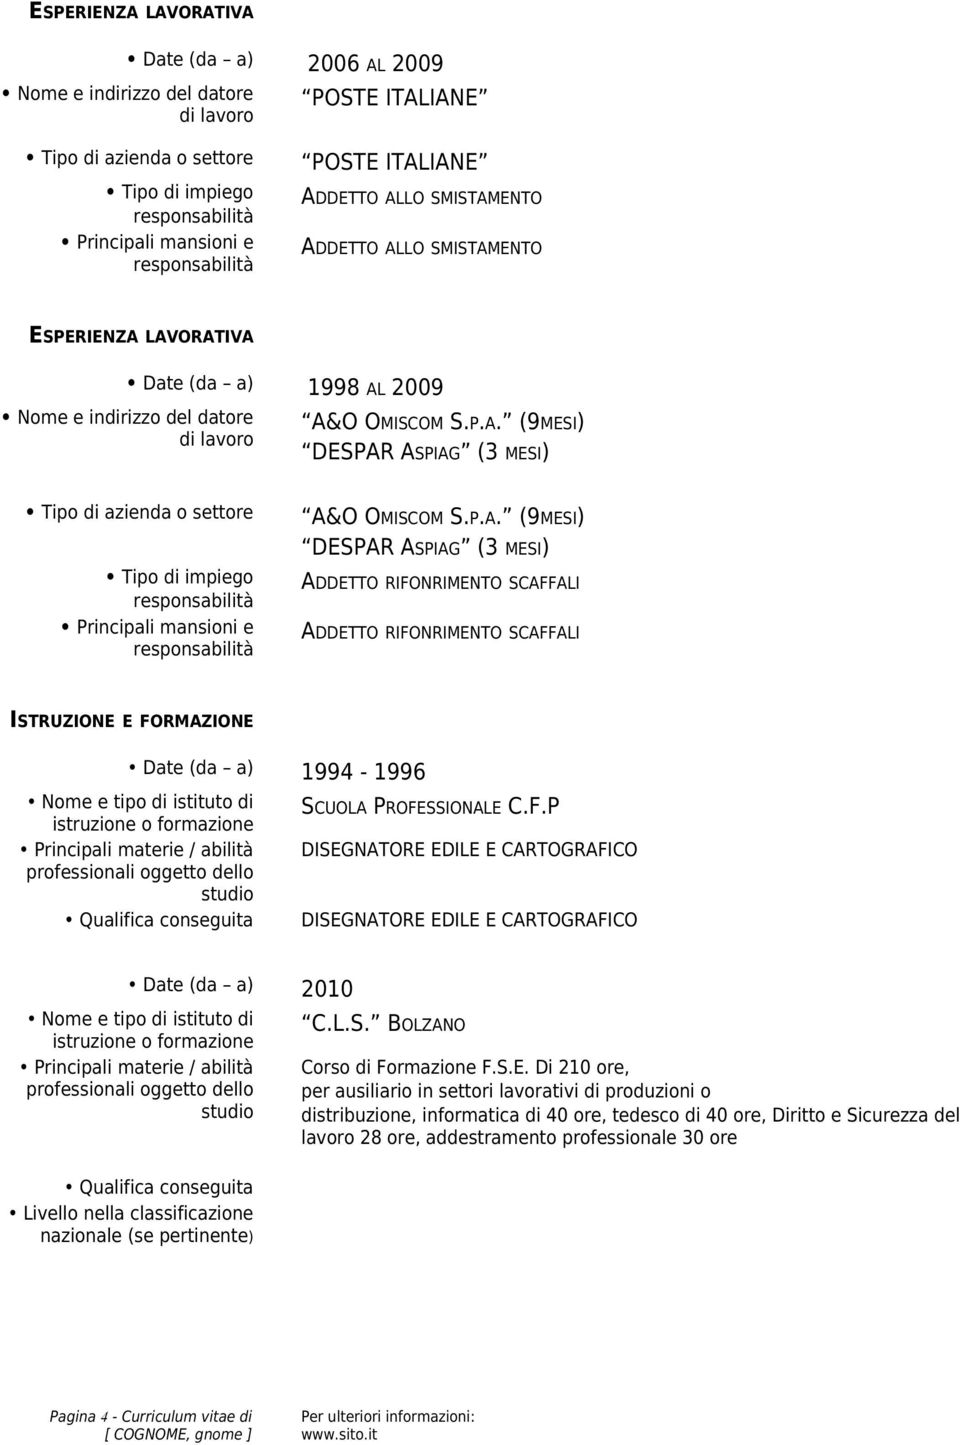 IANE POSTE ITALIANE ADDETTO ALLO SMISTAMENTO ADDETTO ALLO SMISTAMENTO Date (da a) 1998 AL 2009 A&O OMISCOM S.P.A. (9MESI) DESPAR ASPIAG (3 MESI) A&O OMISCOM S.P.A. (9MESI) DESPAR ASPIAG (3 MESI)